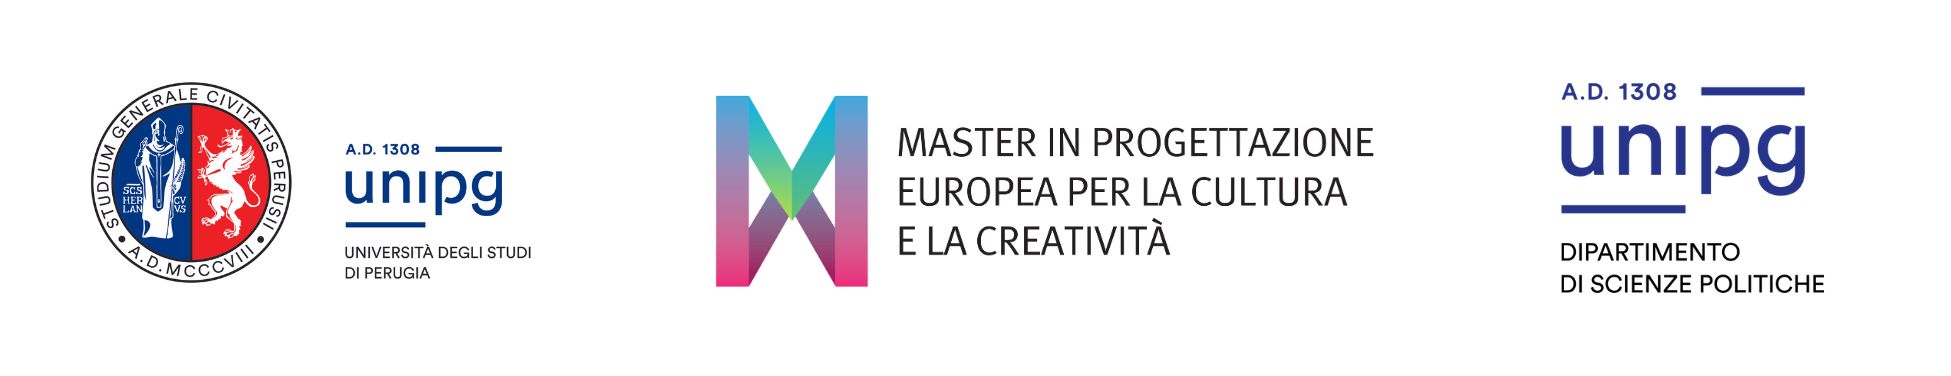 Master in Progettazione europea per la Cultura e la Creatività